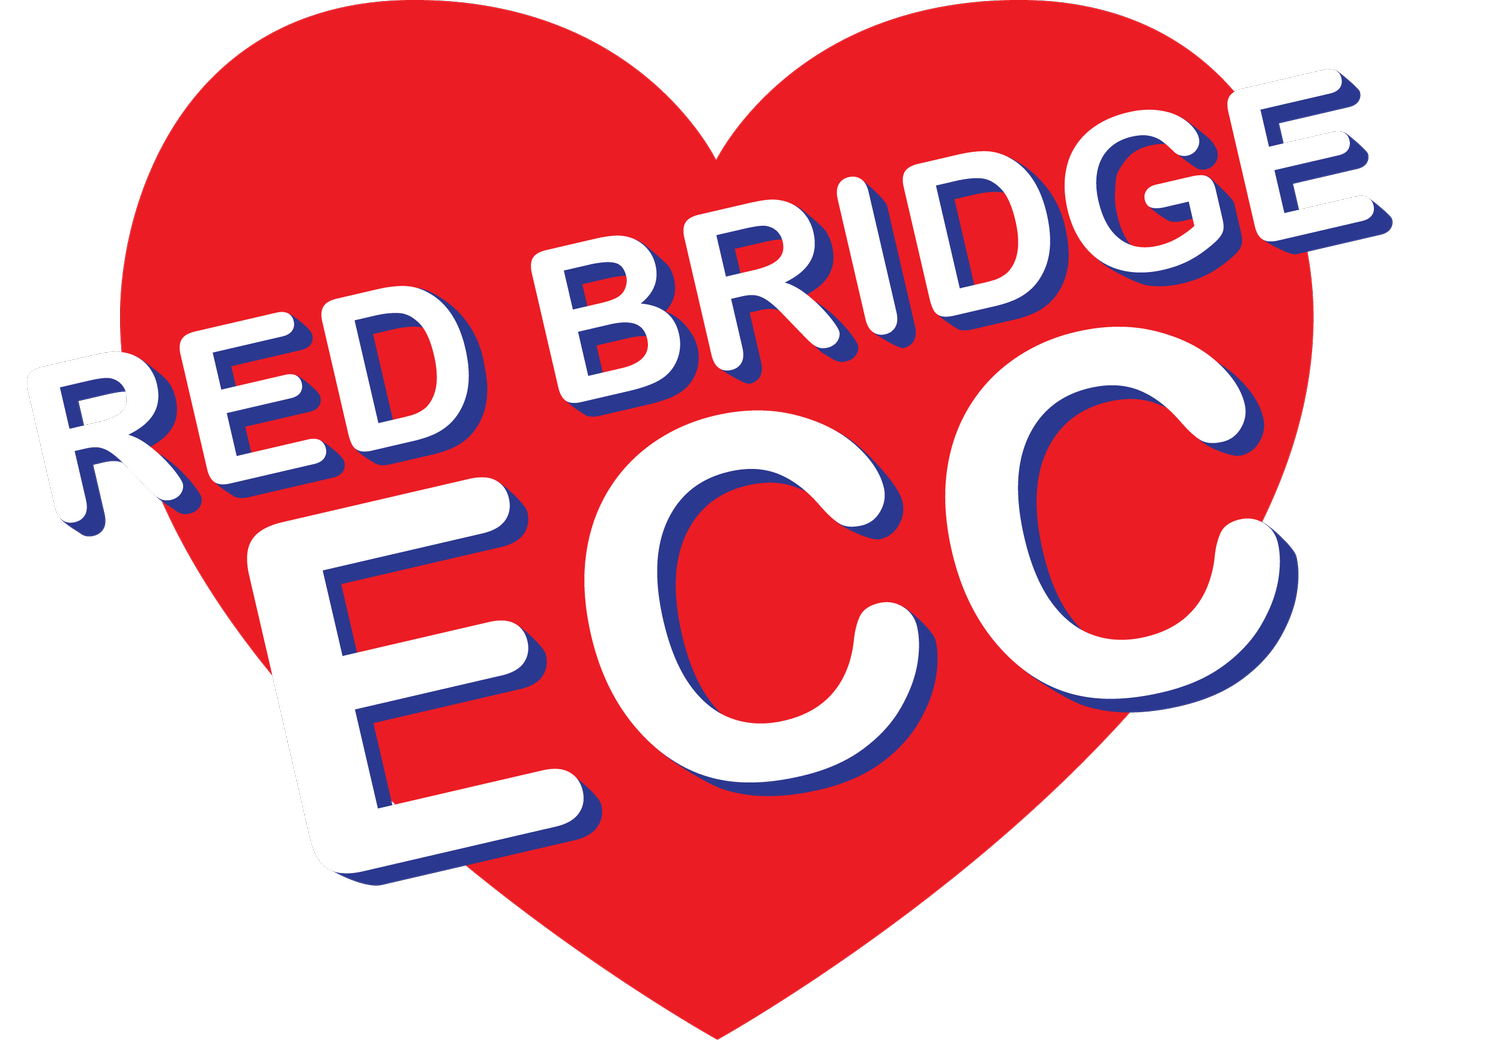 Red Bridge ECC